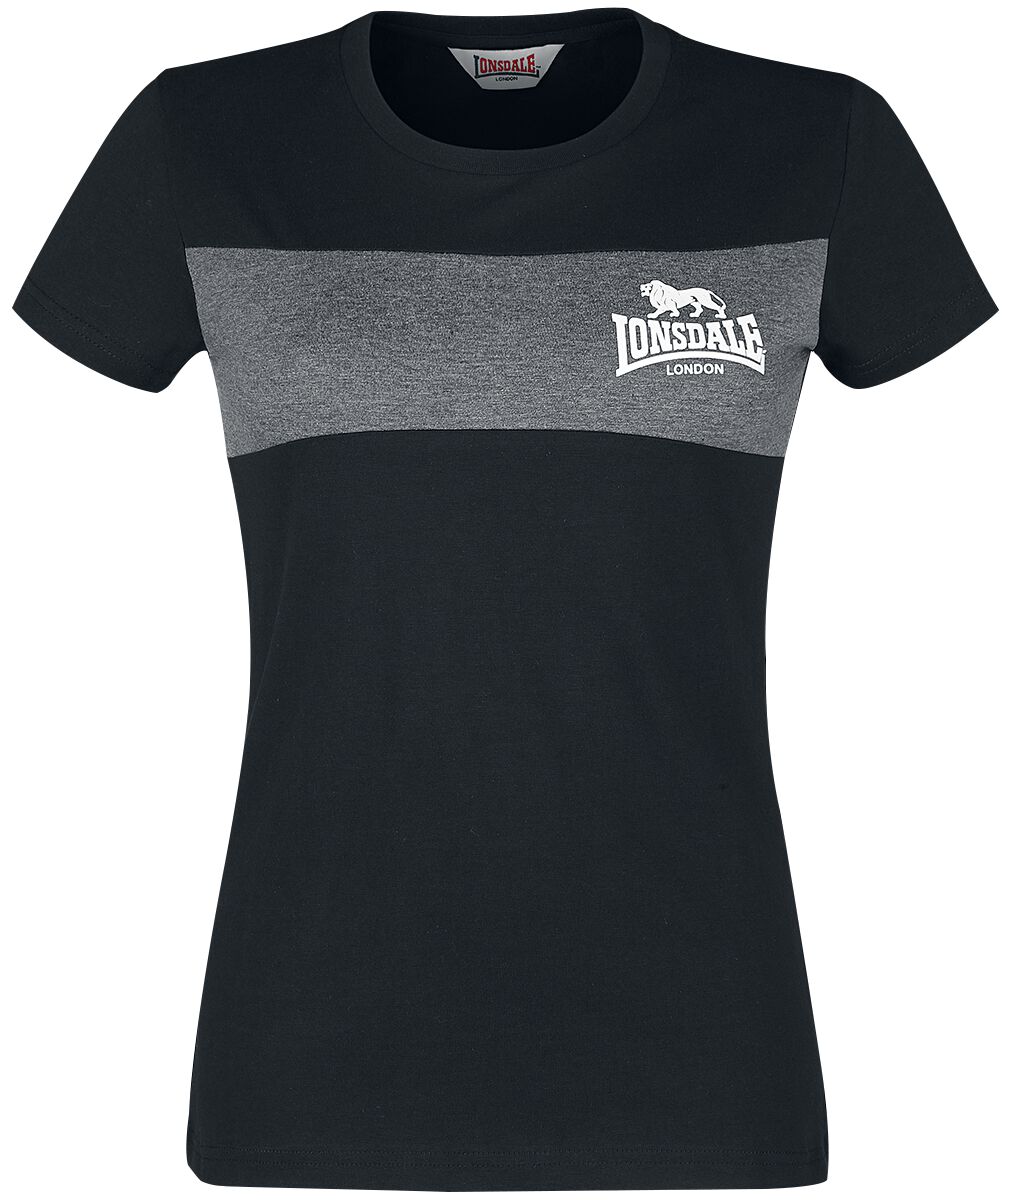 Lonsdale London T-Shirt - Dawsmere - XS bis 3XL - für Damen - Größe L - schwarz